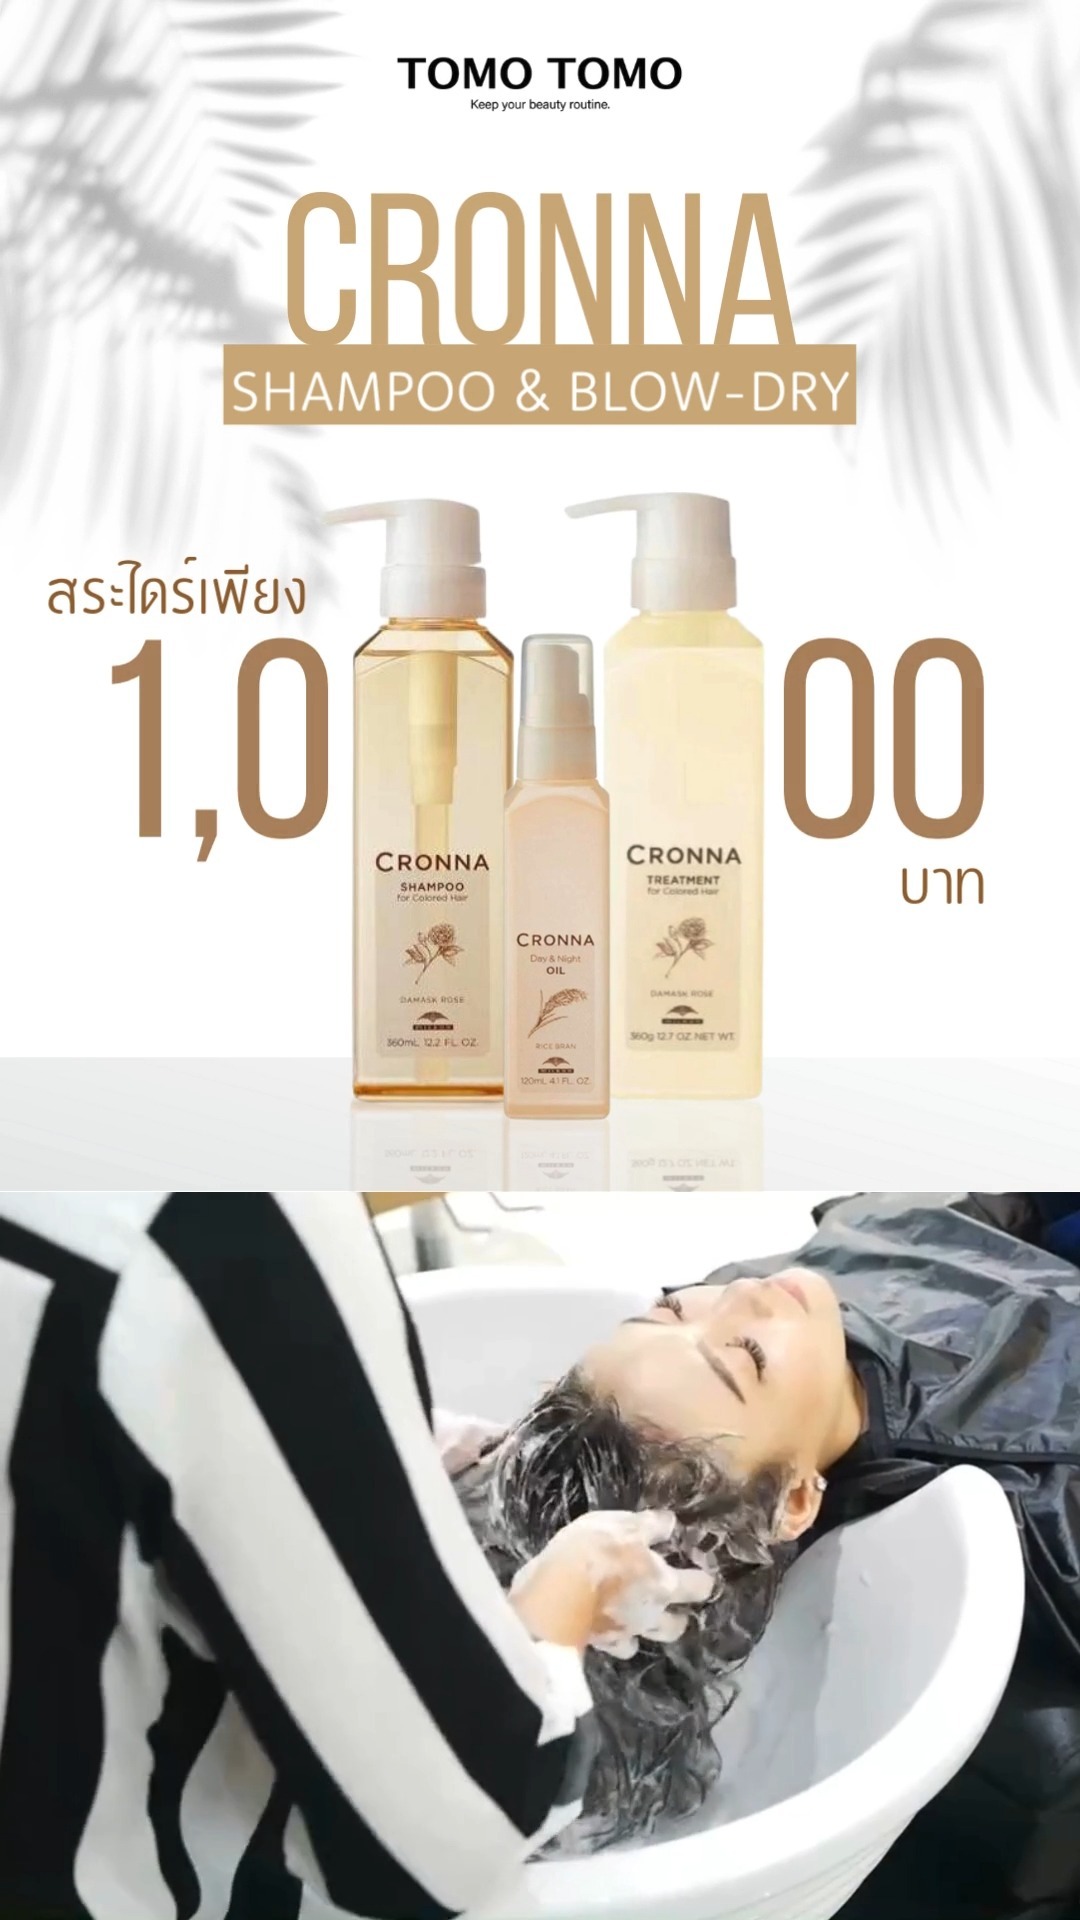 เชิญสาวๆ มารักษาผมให้คงสวยด้วย #CRONNA
ผมนุ่มลื่น เงางาม ไม่ชี้ฟูด้วยผลิตภัณฑ์ Shampoo & Treatment จากแบรนด์ #Milbon
.
❣️ราคาที่สาวๆต้องเลิฟ
Shampoo & Blow-Dry : 1,000 THB
.
🧴ผลิตภัณฑ์ CRONNA ที่ในเมนู
1. CRONNA Shampoo
2. CRONNA Treatment
3. CRONNA Day & Night Oil
.
CRONNA ใช้สารสกัดจากธรรมชาติชั้นดีและเทคโนโลยีชั้นเลิศ
แนะนำสำหรับสาวๆคนไหนที่เพิ่งทำเคมี เพราะว่าอ่อนโยนต่อผมมาก!
และกลิ่นหอมอ่อนๆของ Damask Rose ที่ช่วยให้ผ่อนคลายอีกด้วย
.
ทุกขั้นตอนดูแลโดยสไตลิสต์มากฝีมือ ให้ผมของคุณสวยสุขภาพดี
.
จองคิวหรือสอบถามข้อมูล🏻
️ โทร : 02-009-2616 
 Line : @ tomotomo
Online Booking : https://bit.ly/3P8fOQO  Open : Mon-Sun 10:00-18:30
 Close : Every Wednesday, Third Thursday of the month
🗺️ Map : https://bit.ly/48G0rGf
.
#hairstyle #hairtreatment #hairfashion #hairsalon #promotion #haircolor #ทำผม #แนะนำร้านทำผม #ร้านทำผมทองหล่อ #สระไดร์ #สระผม